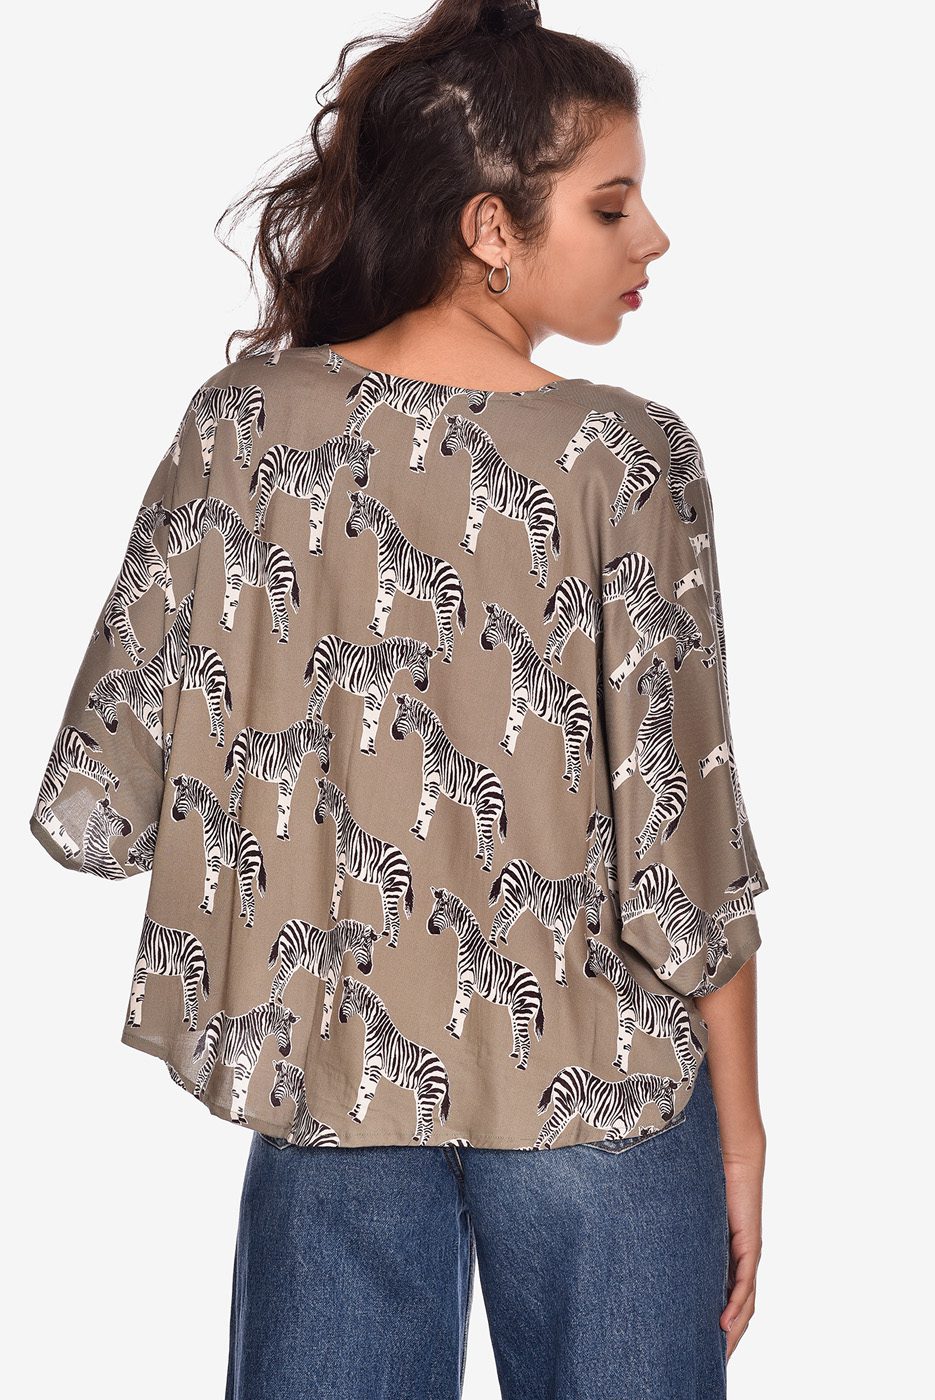 kimono-corto-camisa-top-estampado-bolero